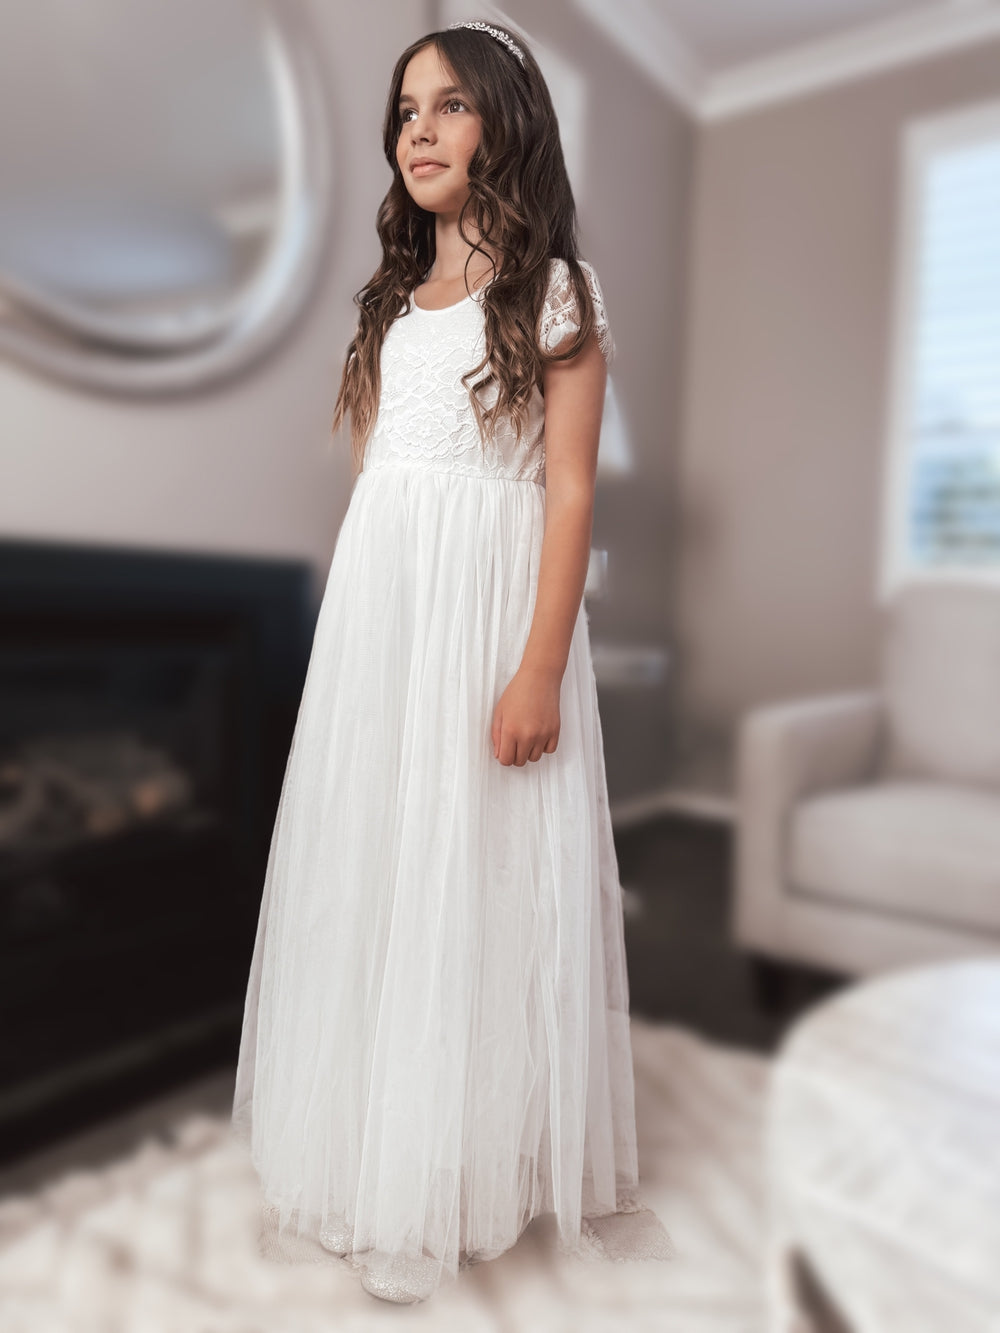 Celeste Girls White Lace & Tulle Dress - Shop AllWhite first communion dress - full length dress